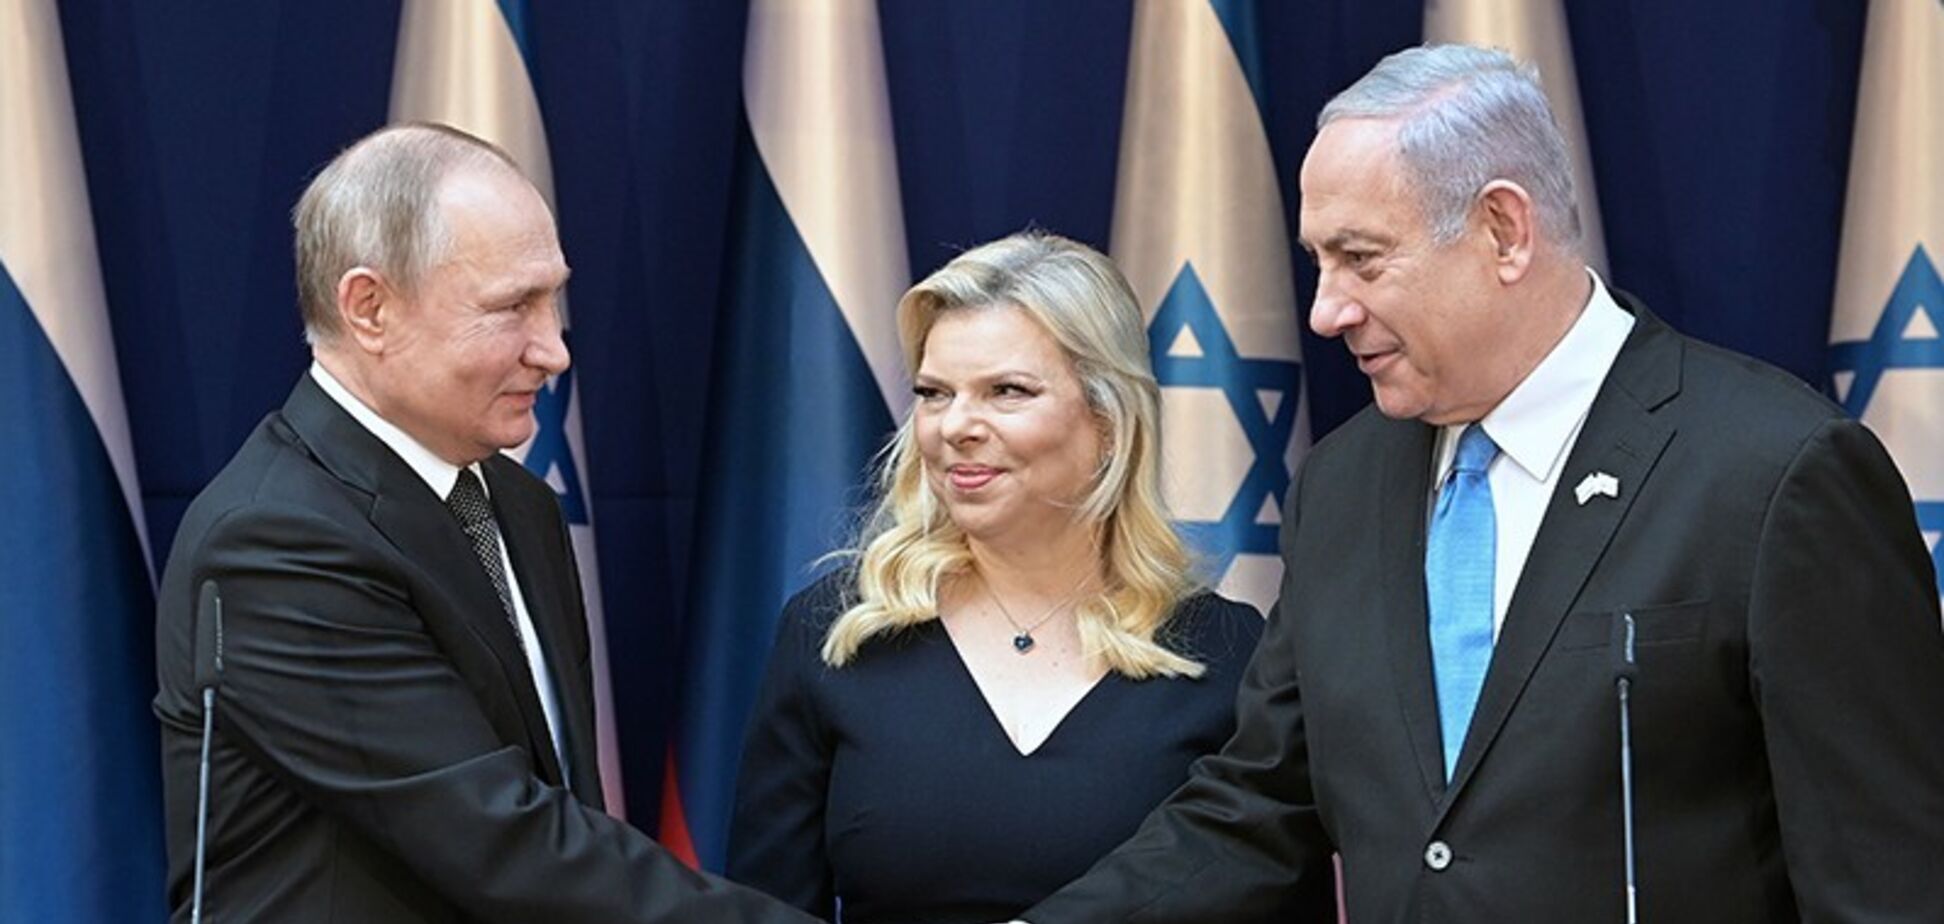 Жена Нетаньяху попала в конфуз рядом с Путиным: видеофакт